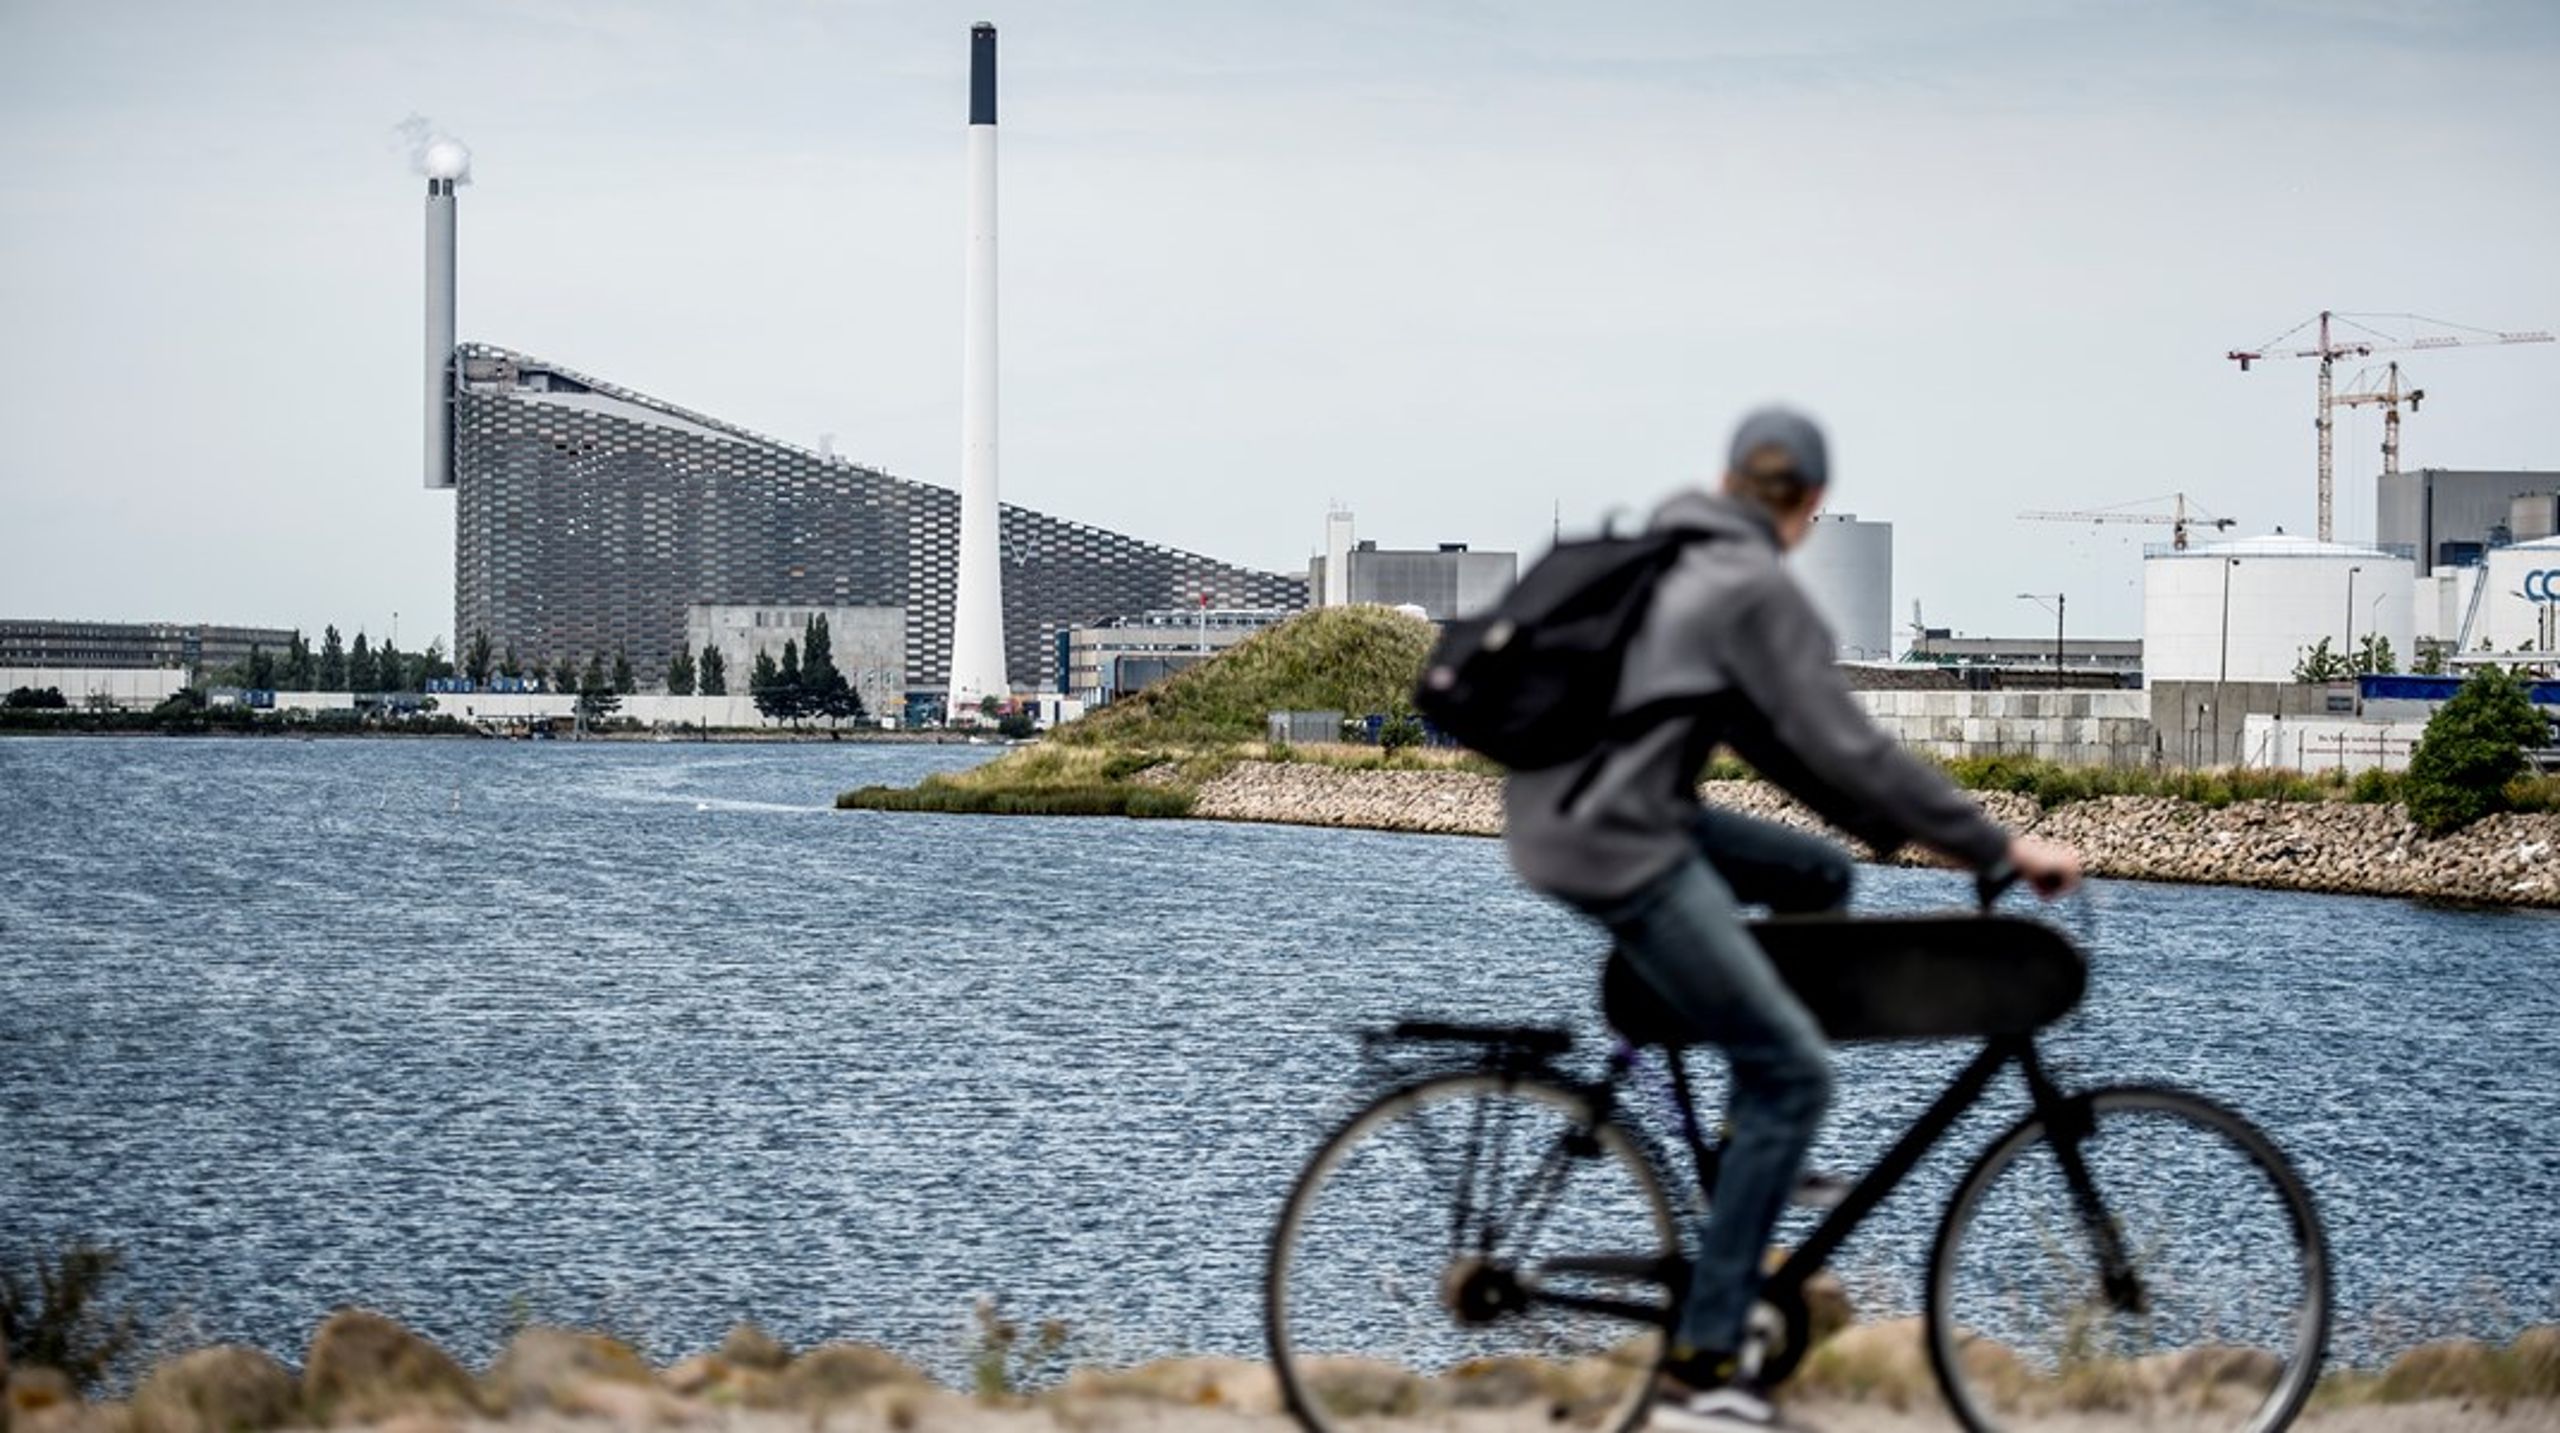 Grøn vækst forudsætter en hastig teknologisk udvikling, men det går ikke hurtigt nok. I 2022 meldte København ud, at byen ikke når sit CO2-mål, da carbon capture-teknologien ikke kan nå at levere de planlagte reduktioner, skriver Marcus Feldthus og Tanja Gotthardsen.<br>